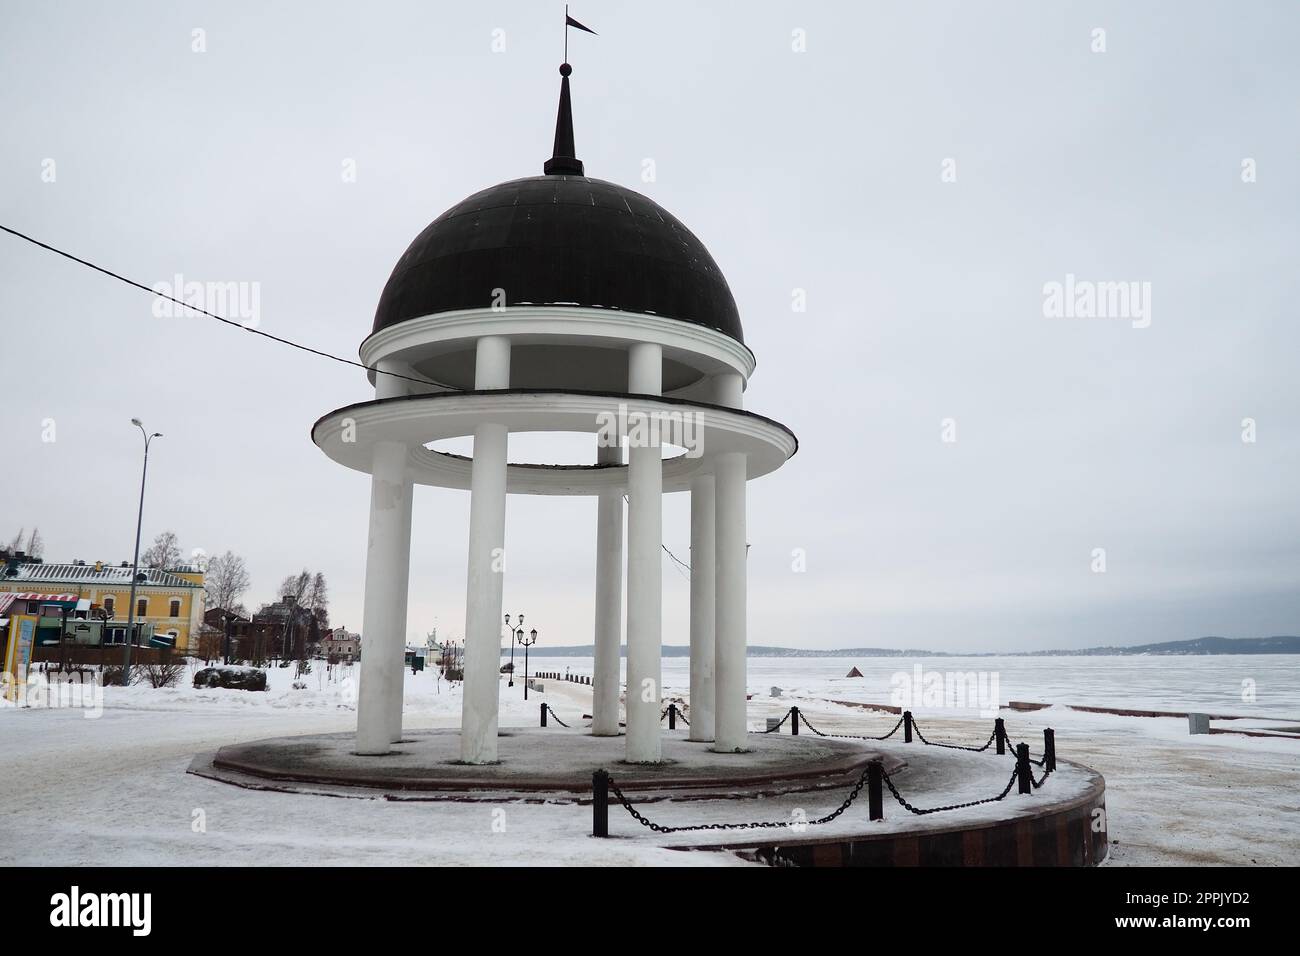 Petrozavodsk, Karelien, Russland, 16. Januar 2023. Arbor-Rotunde mit einem Turm am Ufer des Onega-Sees. Architektur im klassischen Stil. Symbol der Stadt und Veranstaltungsort für Hochzeitszeremonien. Stockfoto